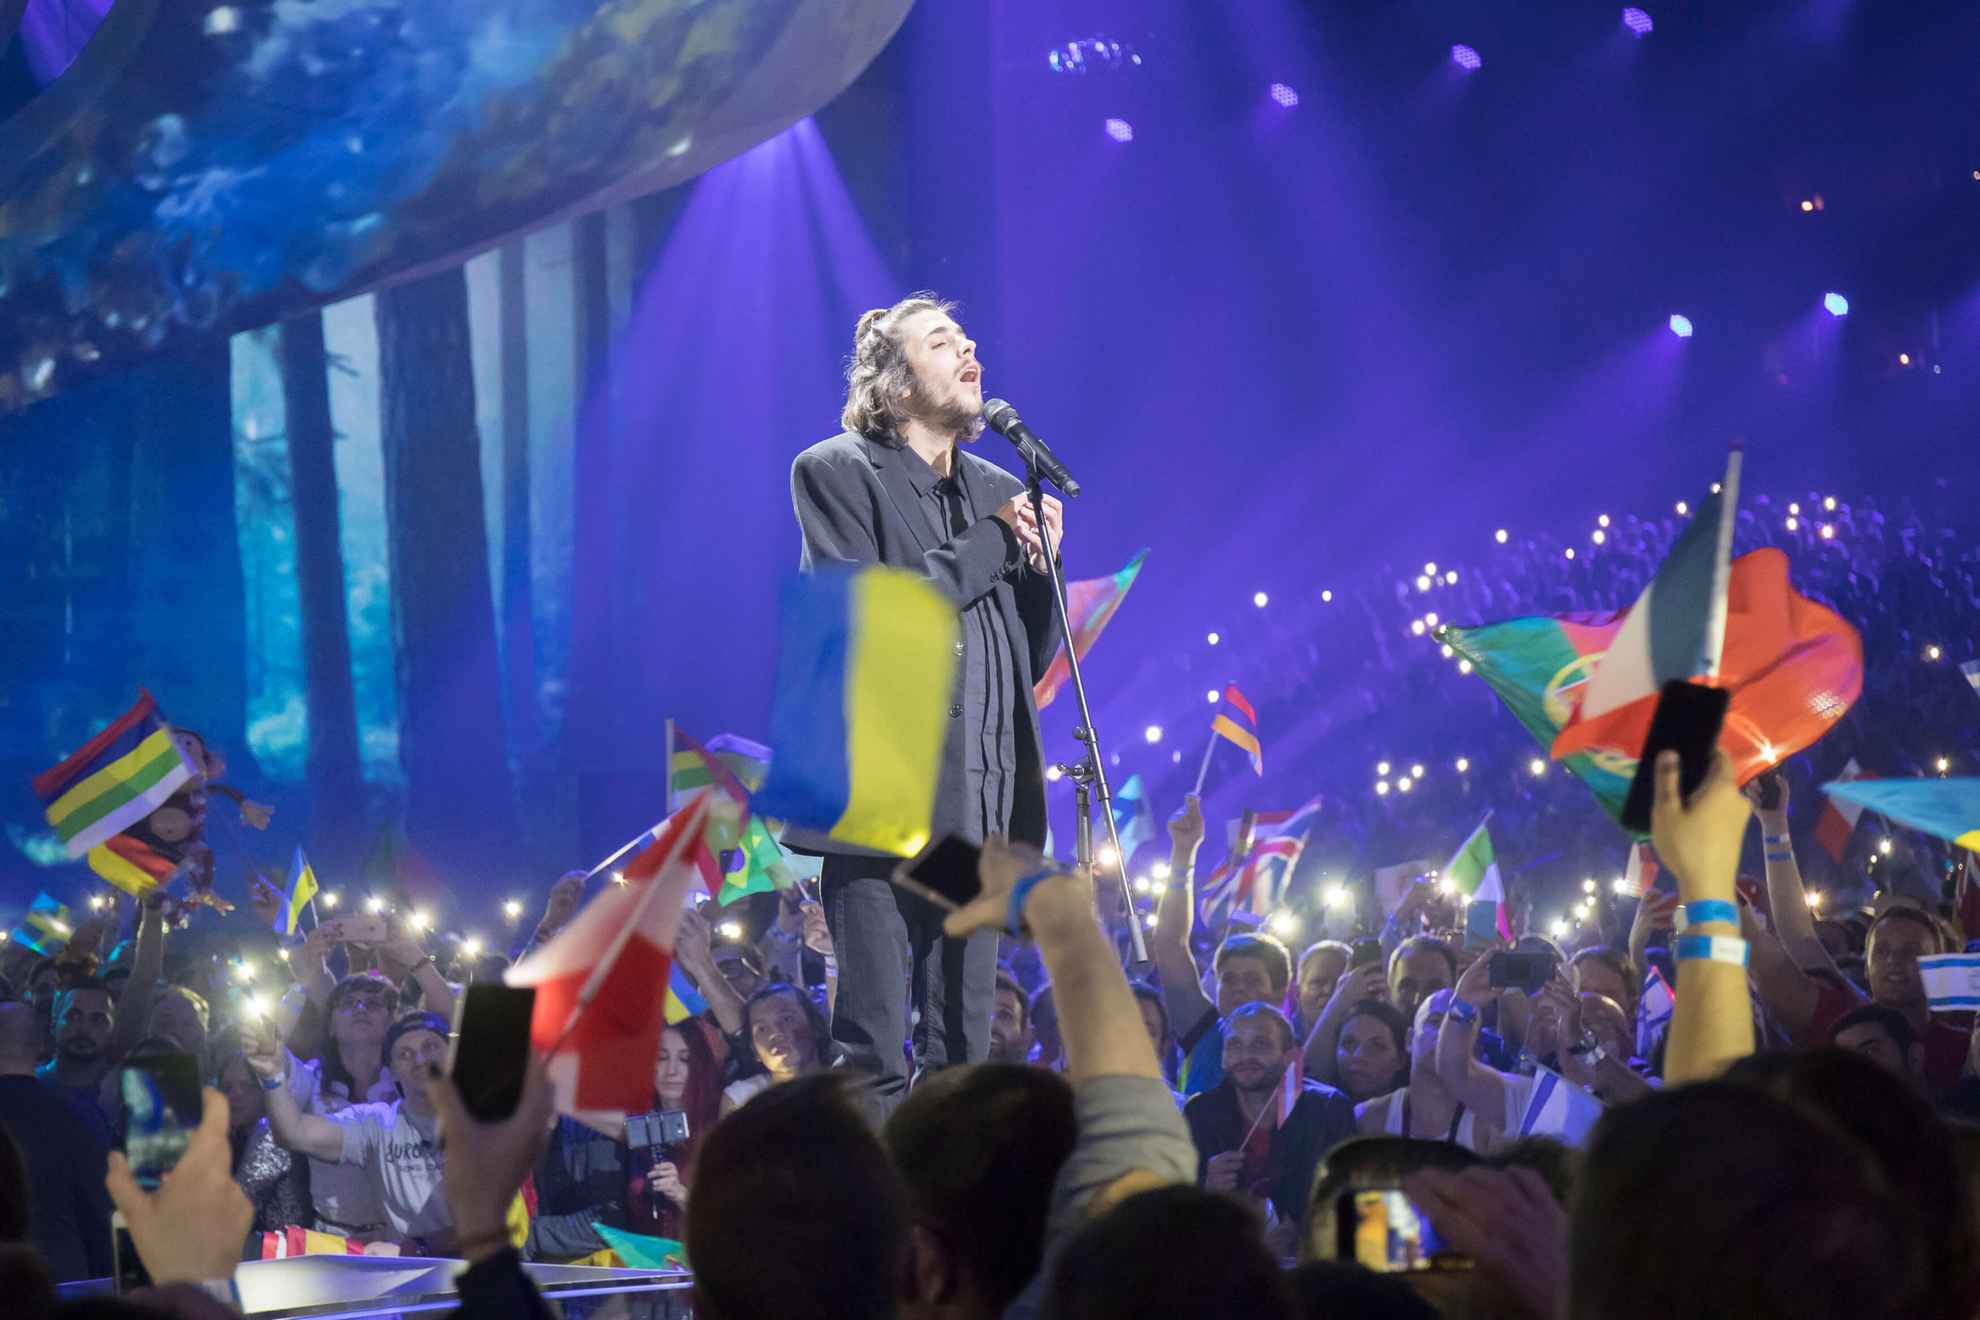 Salvador Sobral, Gewinner des Eurovision Song Contest 2017, bei seinem Auftritt auf der Bühne